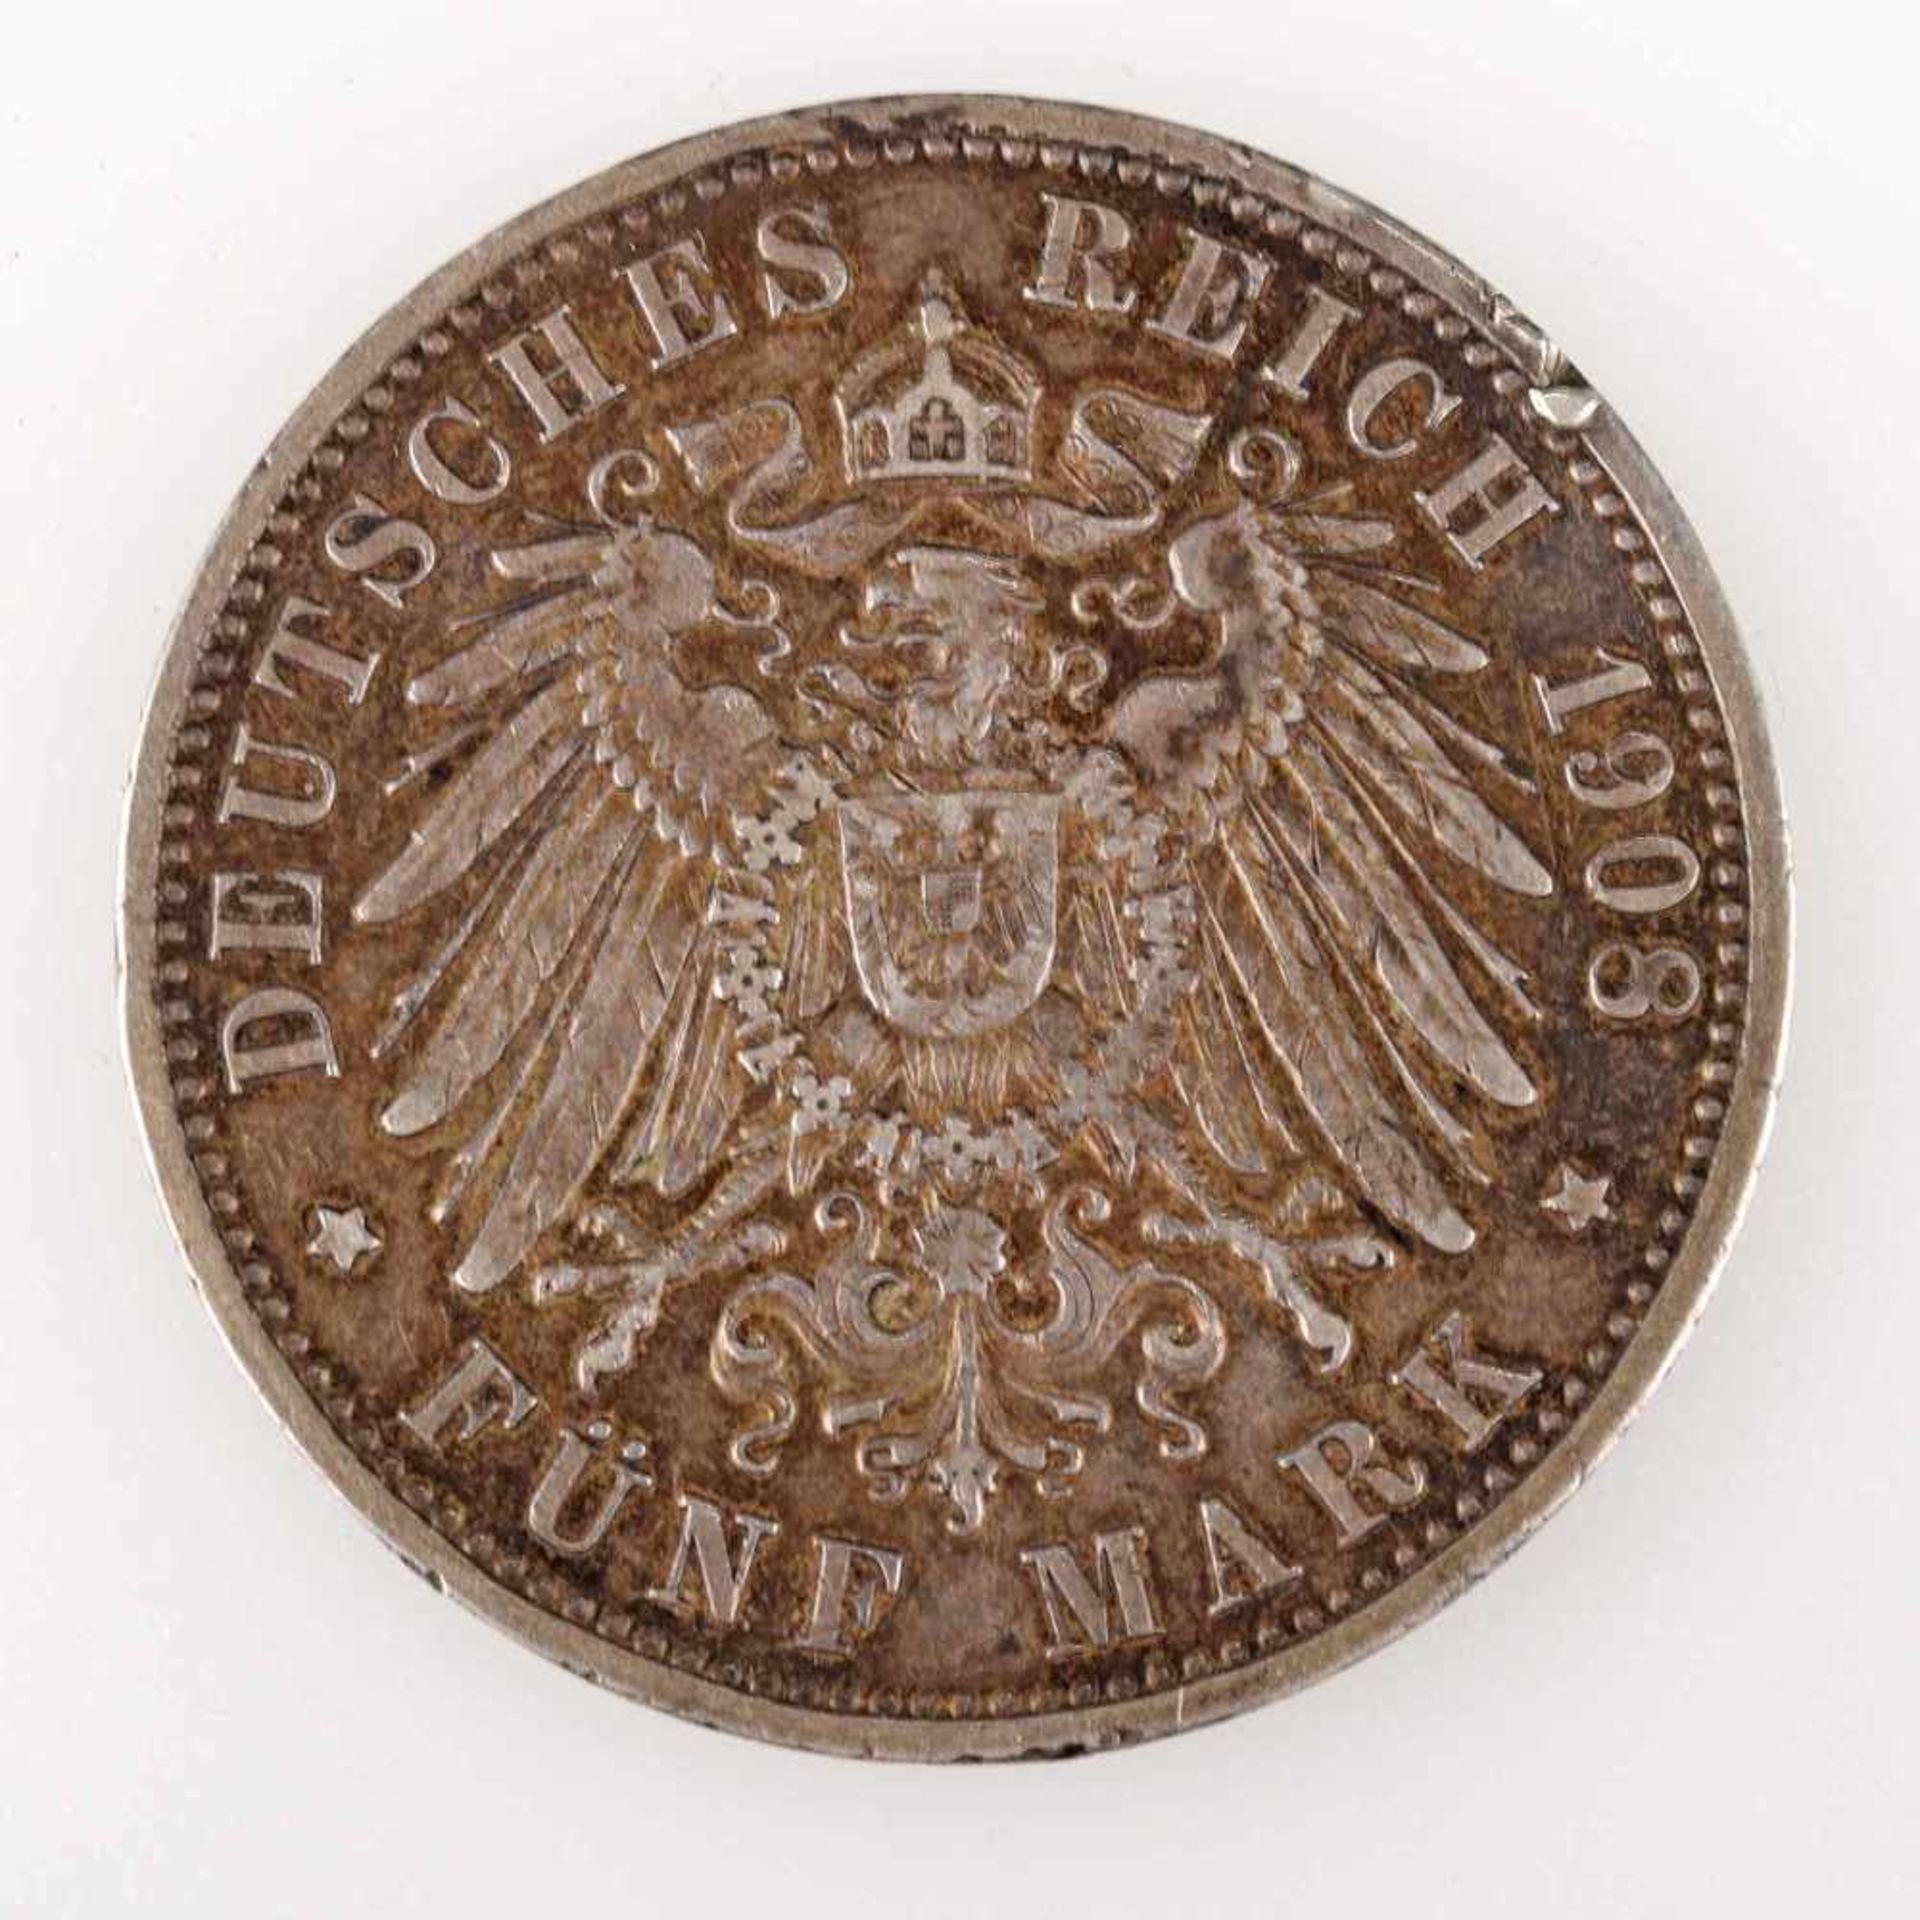 Silbermünze Kaiserreich - Baden 1908 5 Mark, av. Friedrich II. Grossherzog von Baden Kopf links, rv. - Bild 3 aus 3